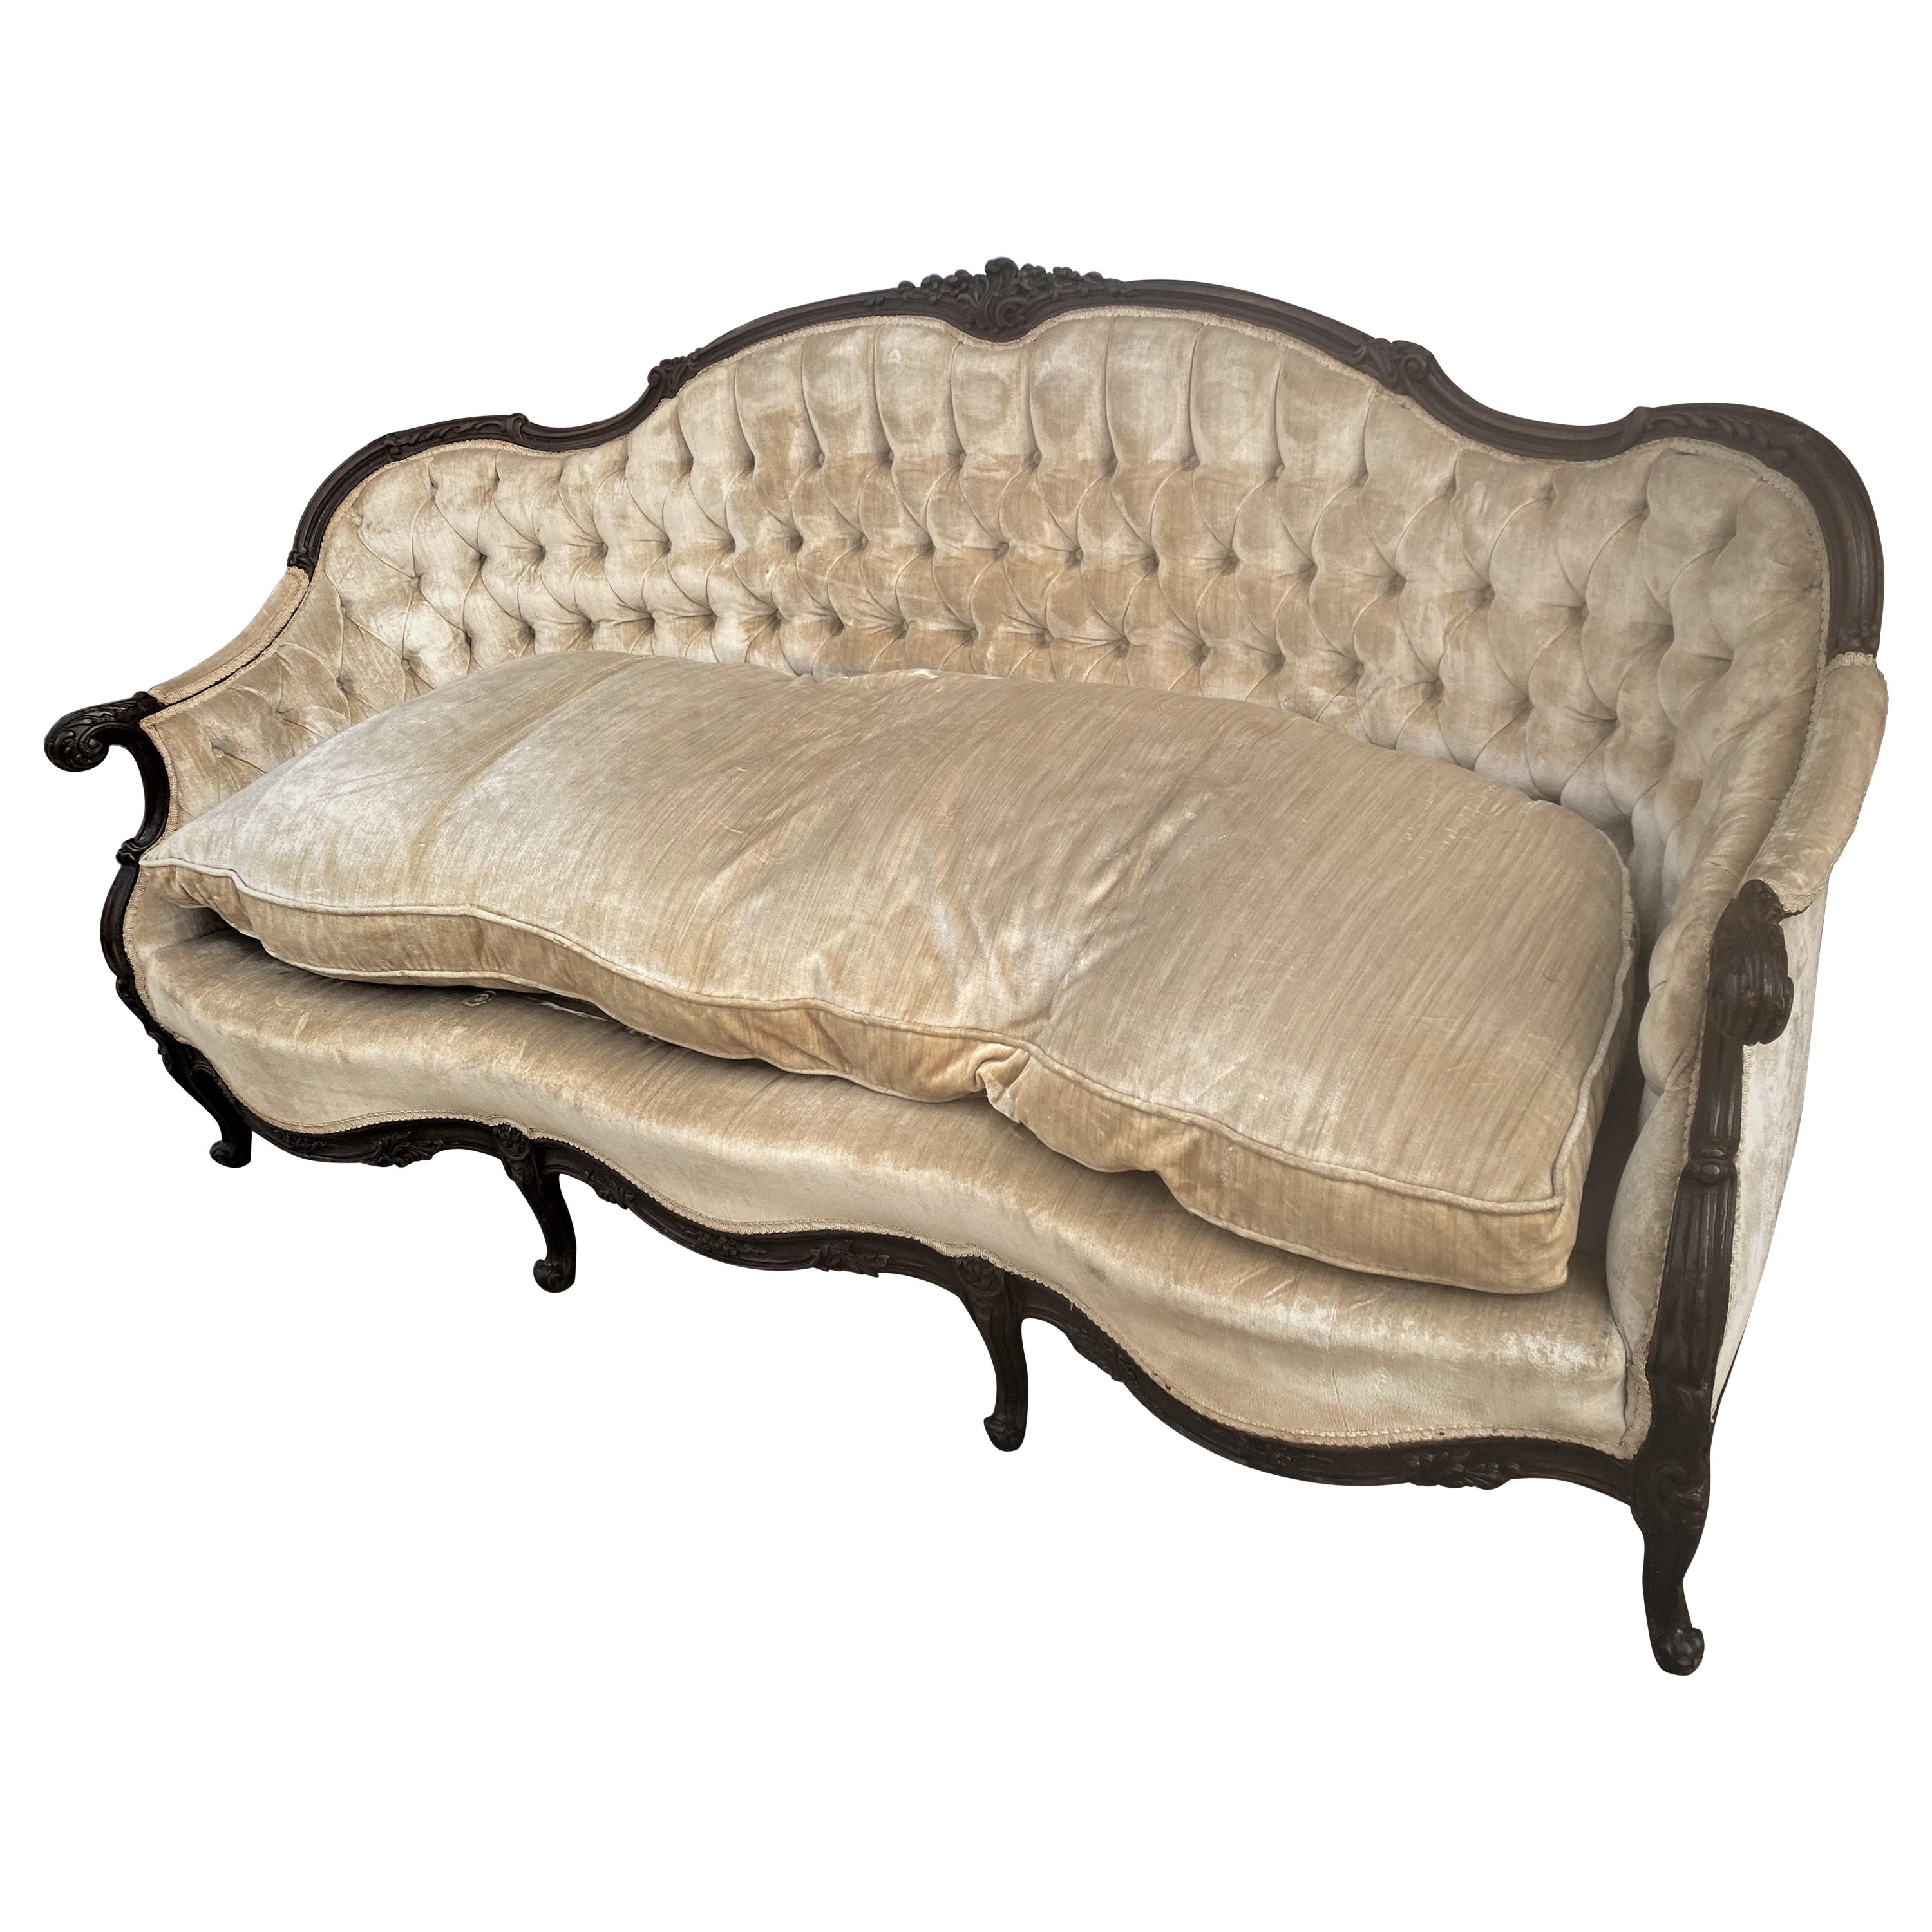 Spätes 19. Jahrhundert Französisch Land Langes Sofa/Sofa mit geschnitzten Armen, Beinen und Rücken 